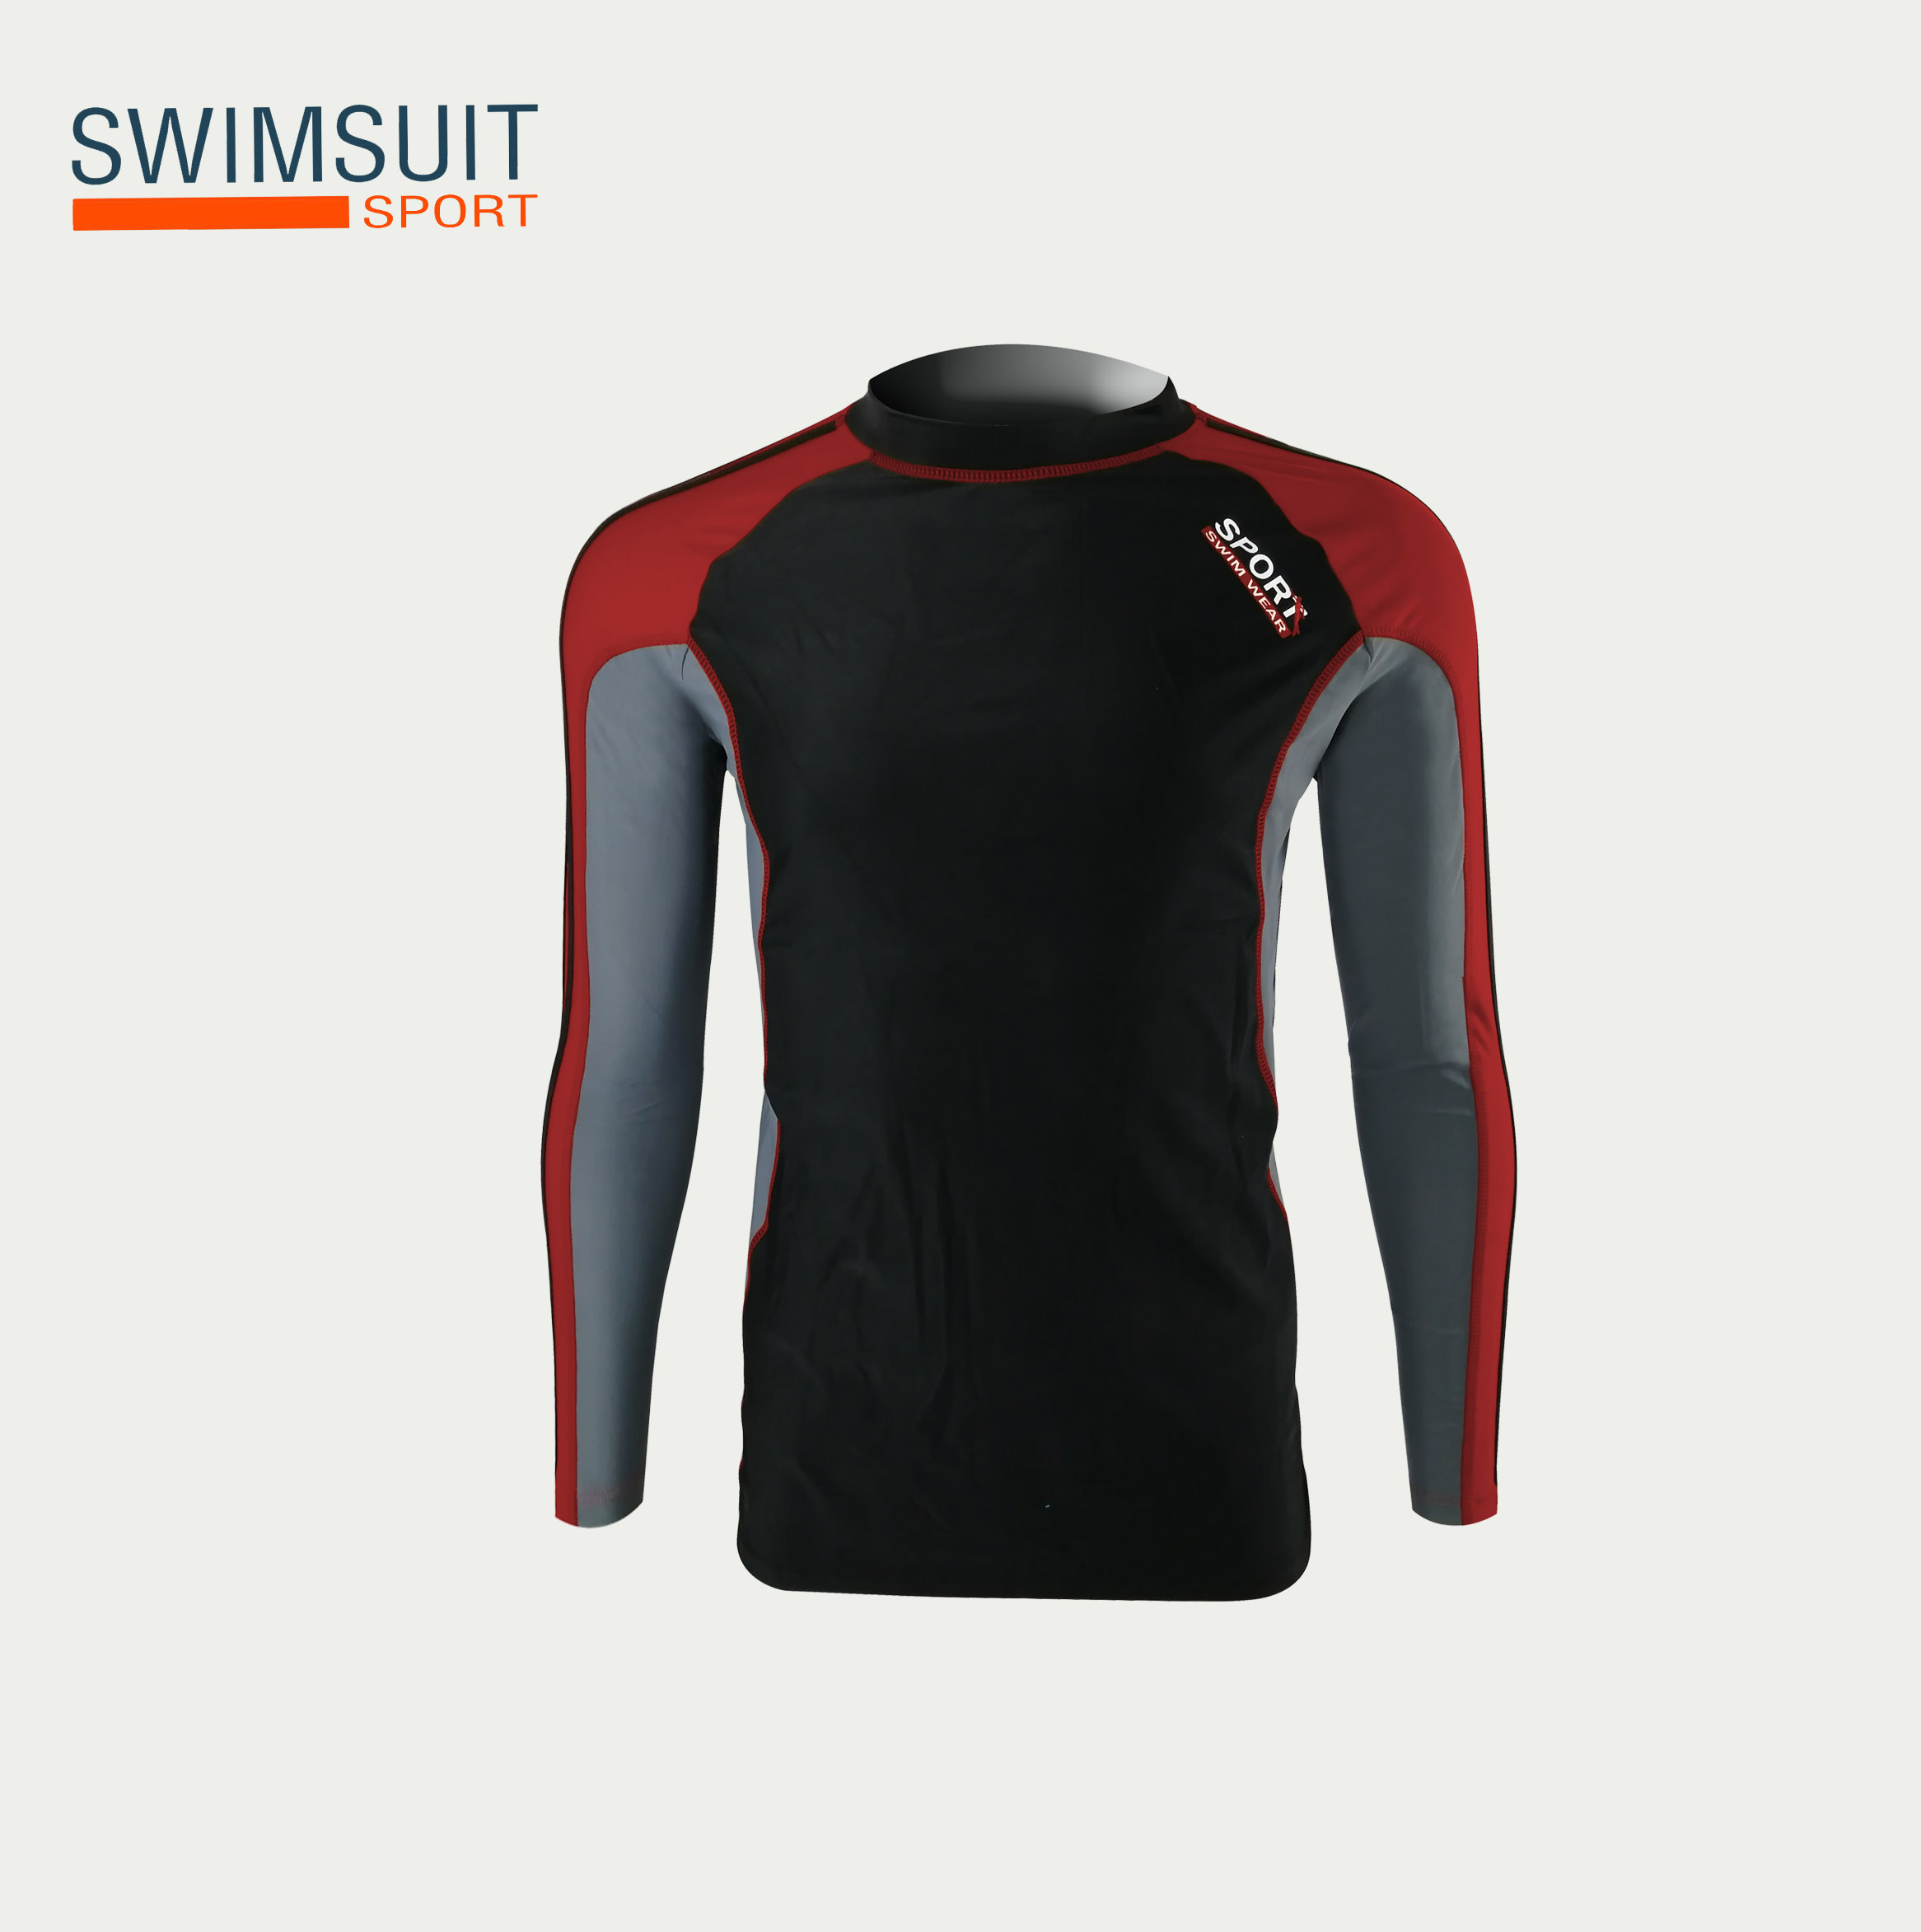 ชุดว่ายน้ำชาย ชุดว่ายน้ำชายแขนยาว สีดำ ผ้ากันยูวีอย่างดี เสื้อยืดกีฬา 91625